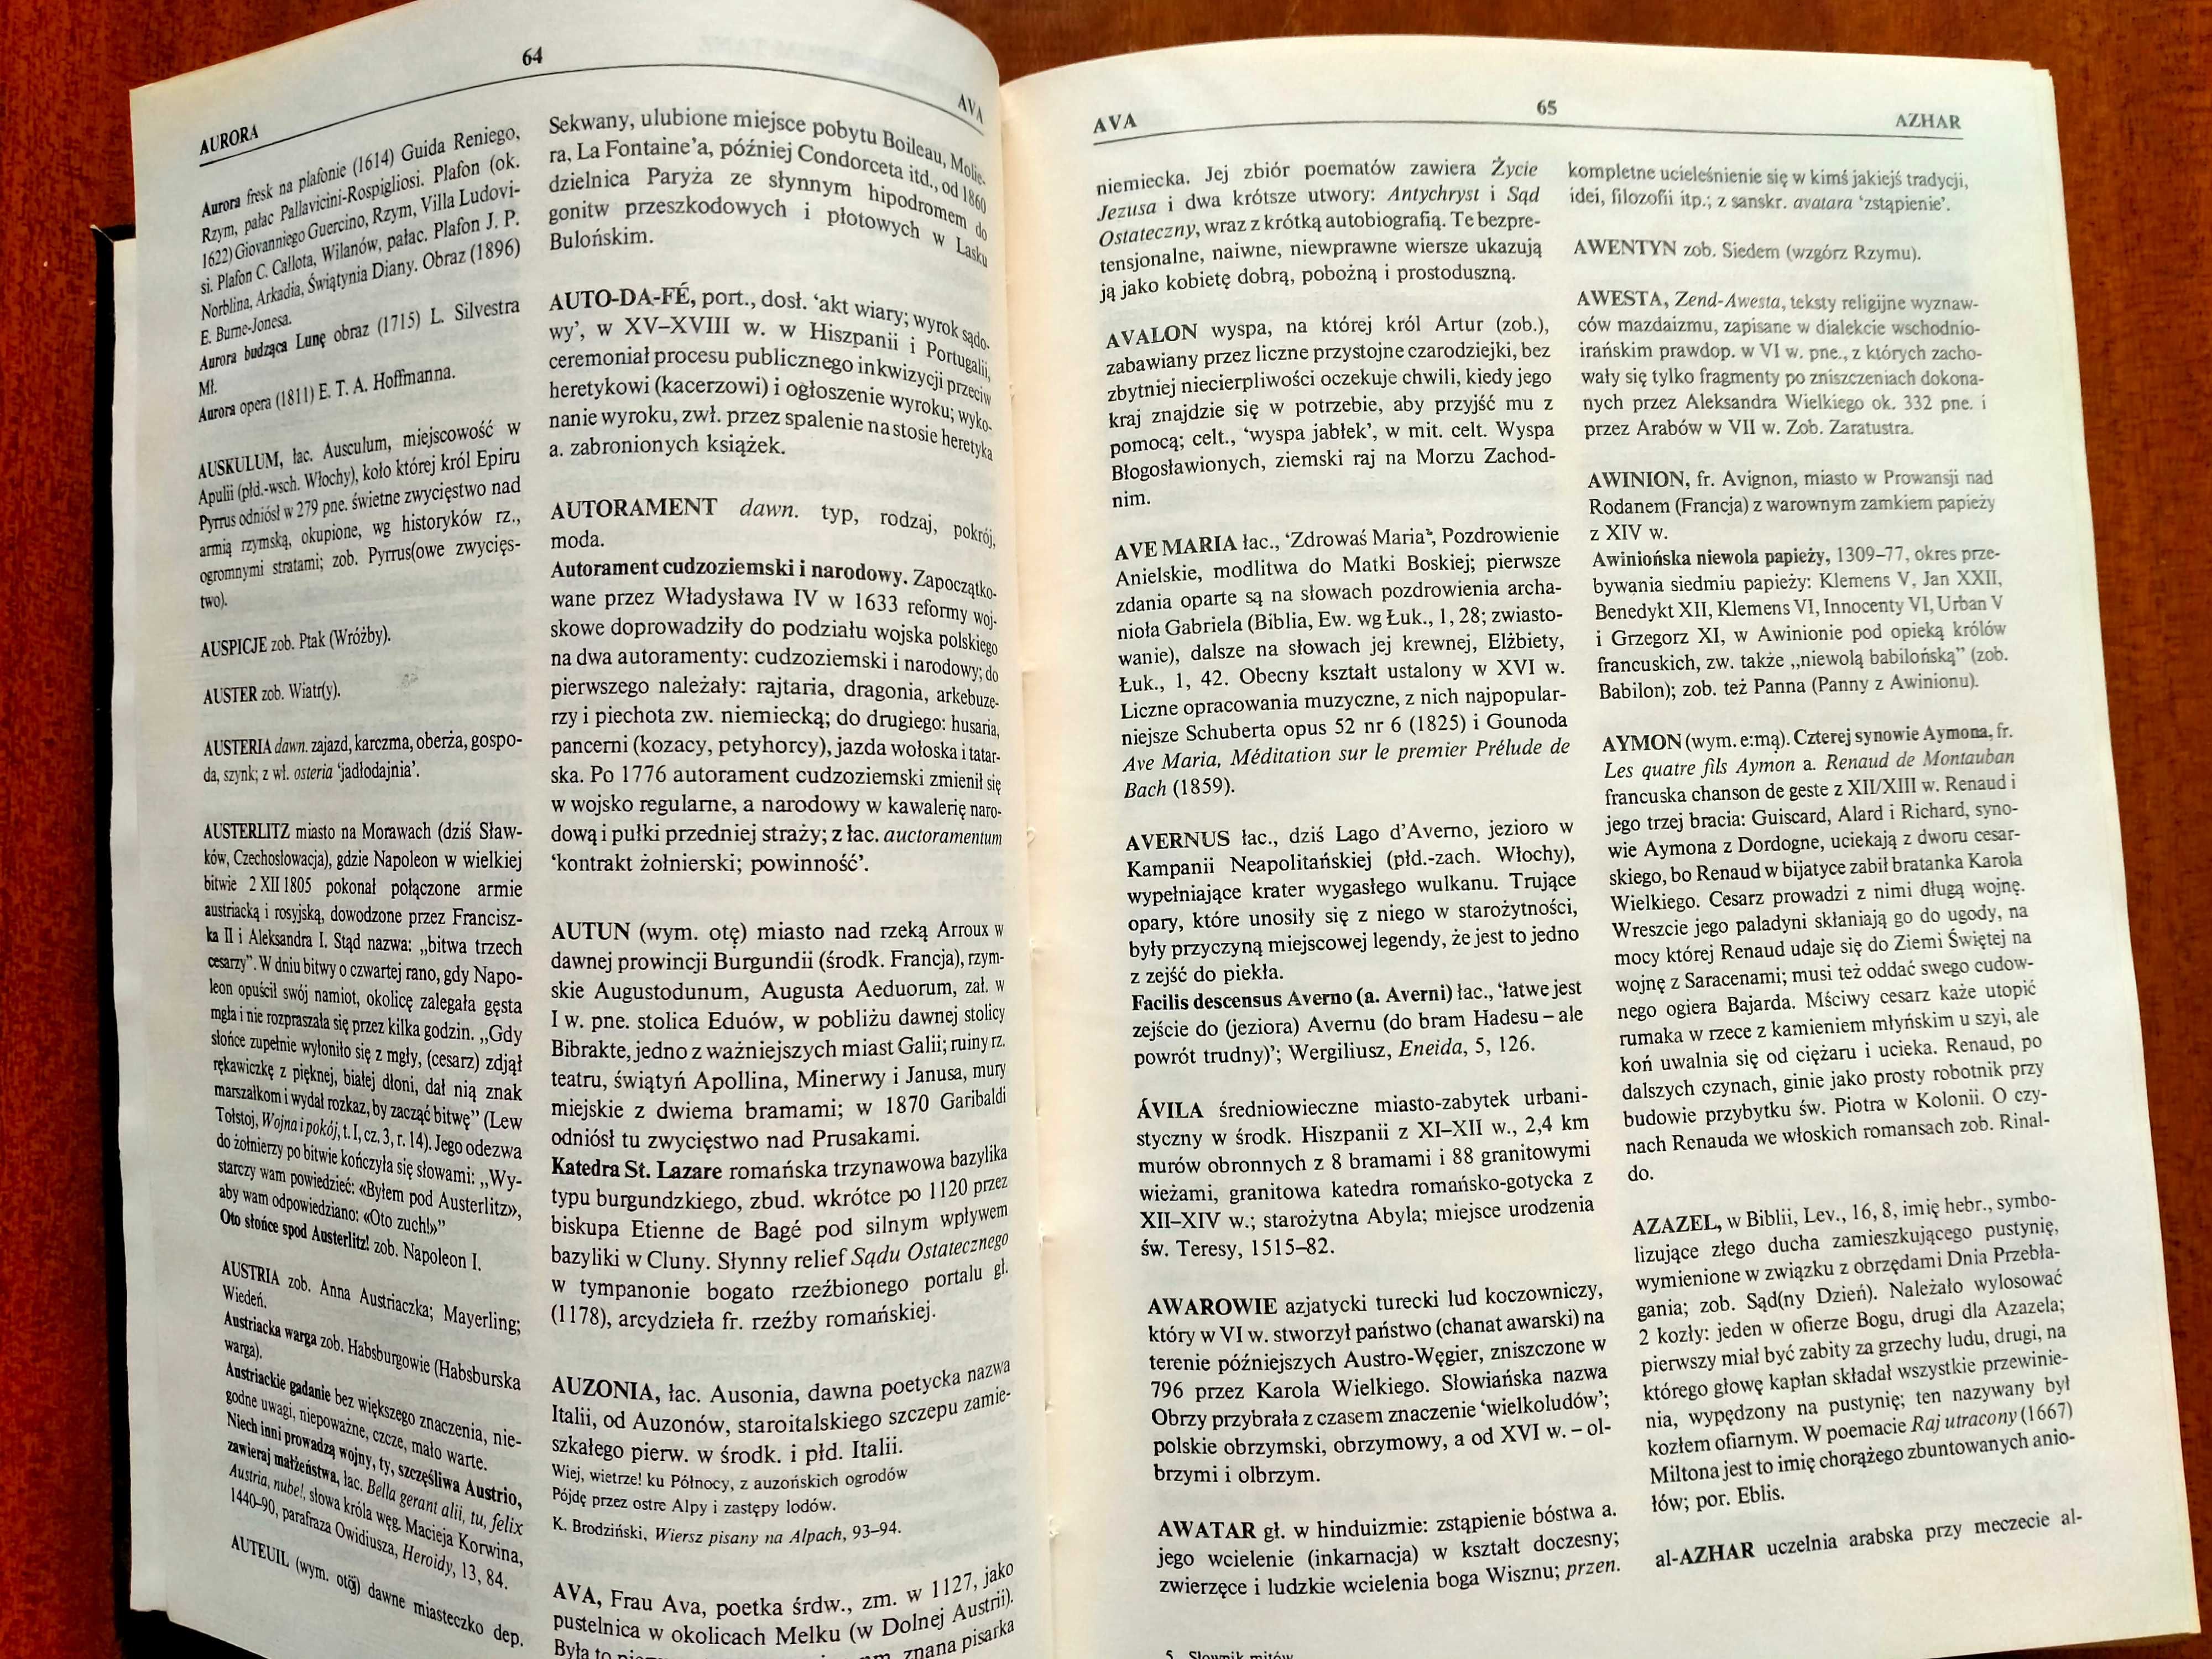 Słownik mitów i tradycji kultury - Kopaliński